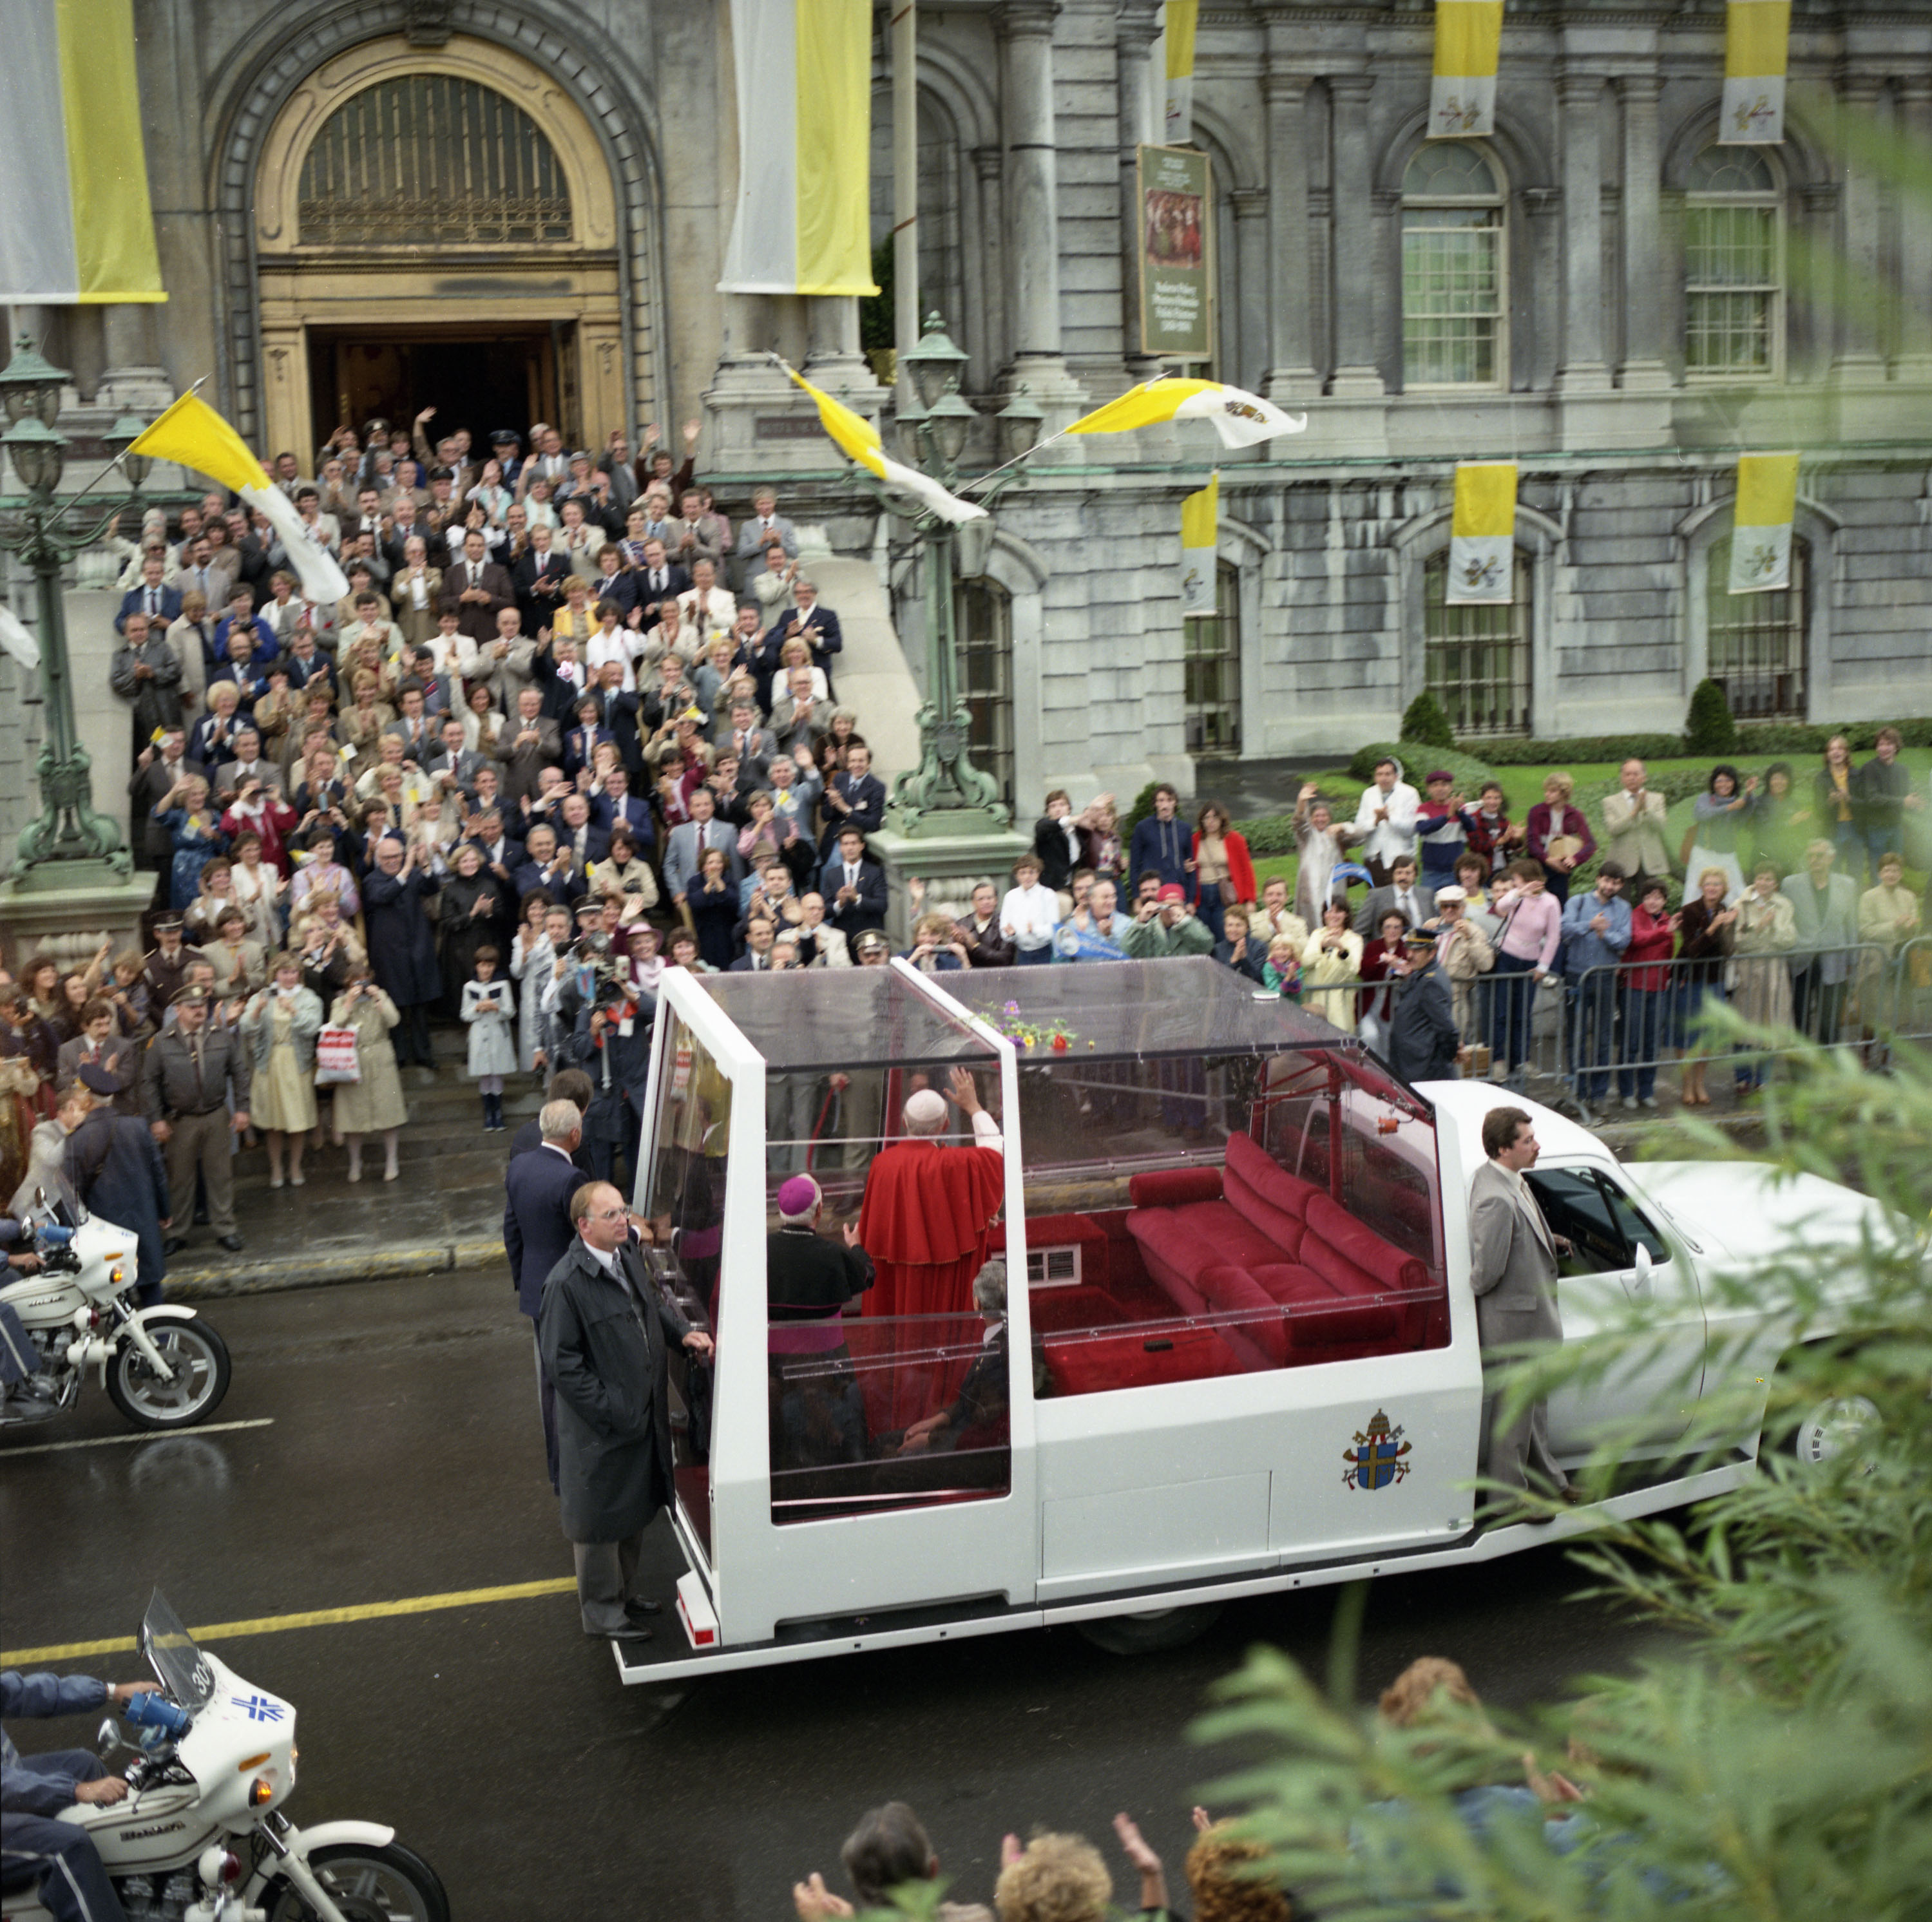 Le pape salue la foule de sa papamobile rue Notre-Dame, face à l'hôtel de ville